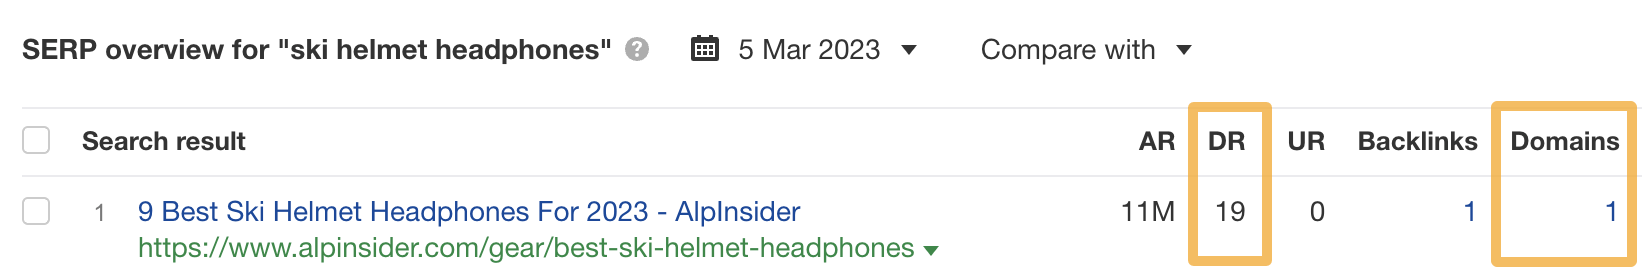 Exemple d'un site web à faible DDR se classant en première position pour "ski helmet headphones" avec un seul site web liant.
